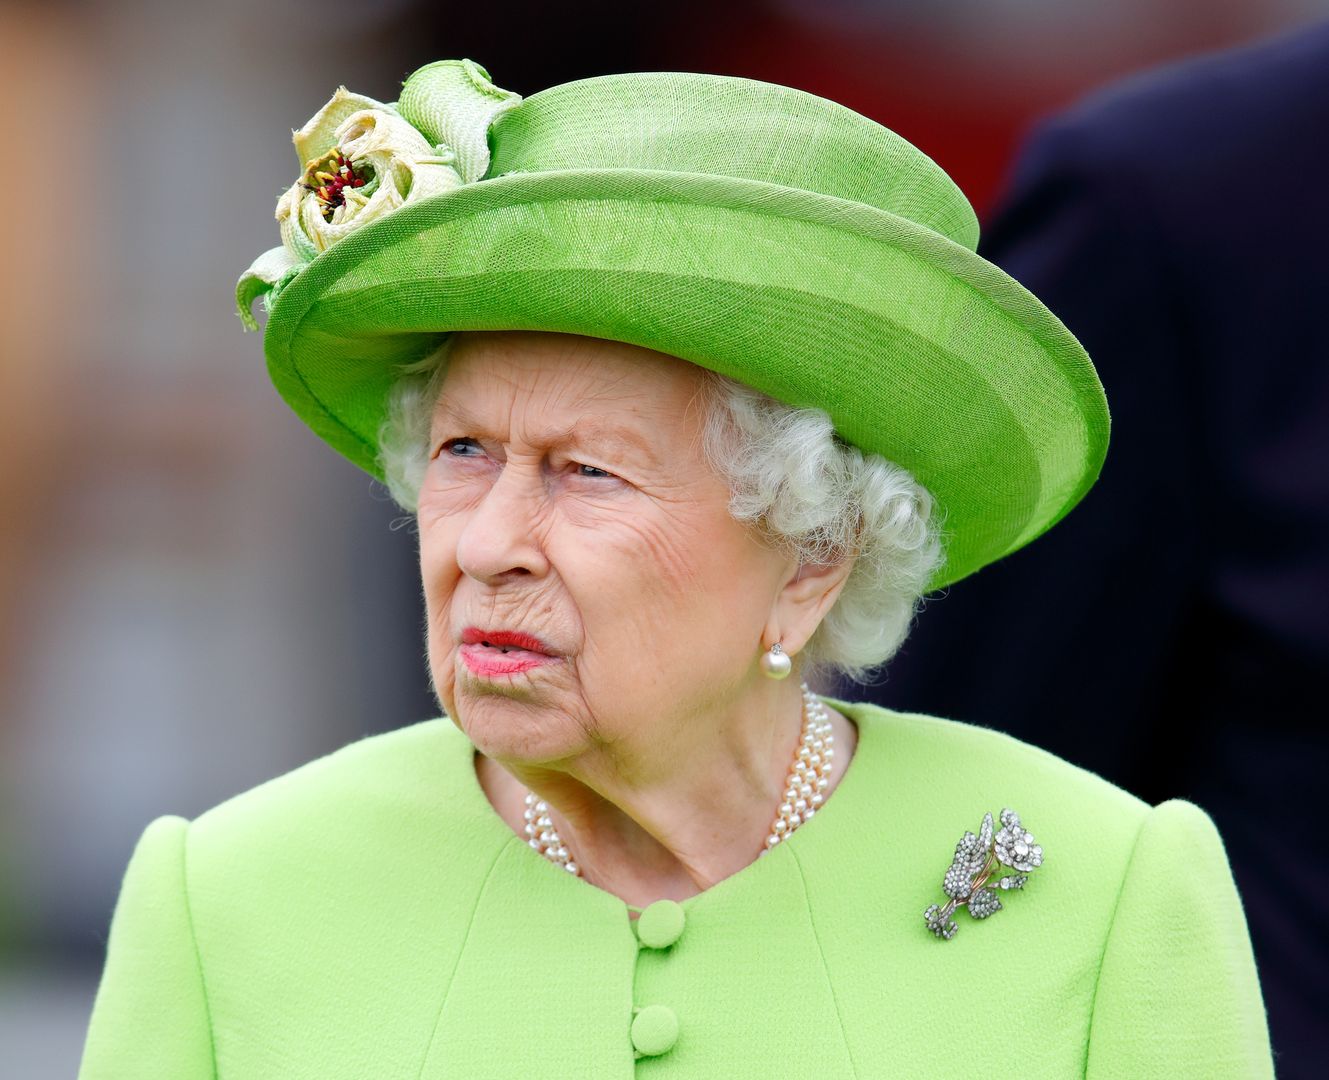 Królowa Elżbieta II znalazła się w niebezpieczeństwie. Chodzi o jej pracownika